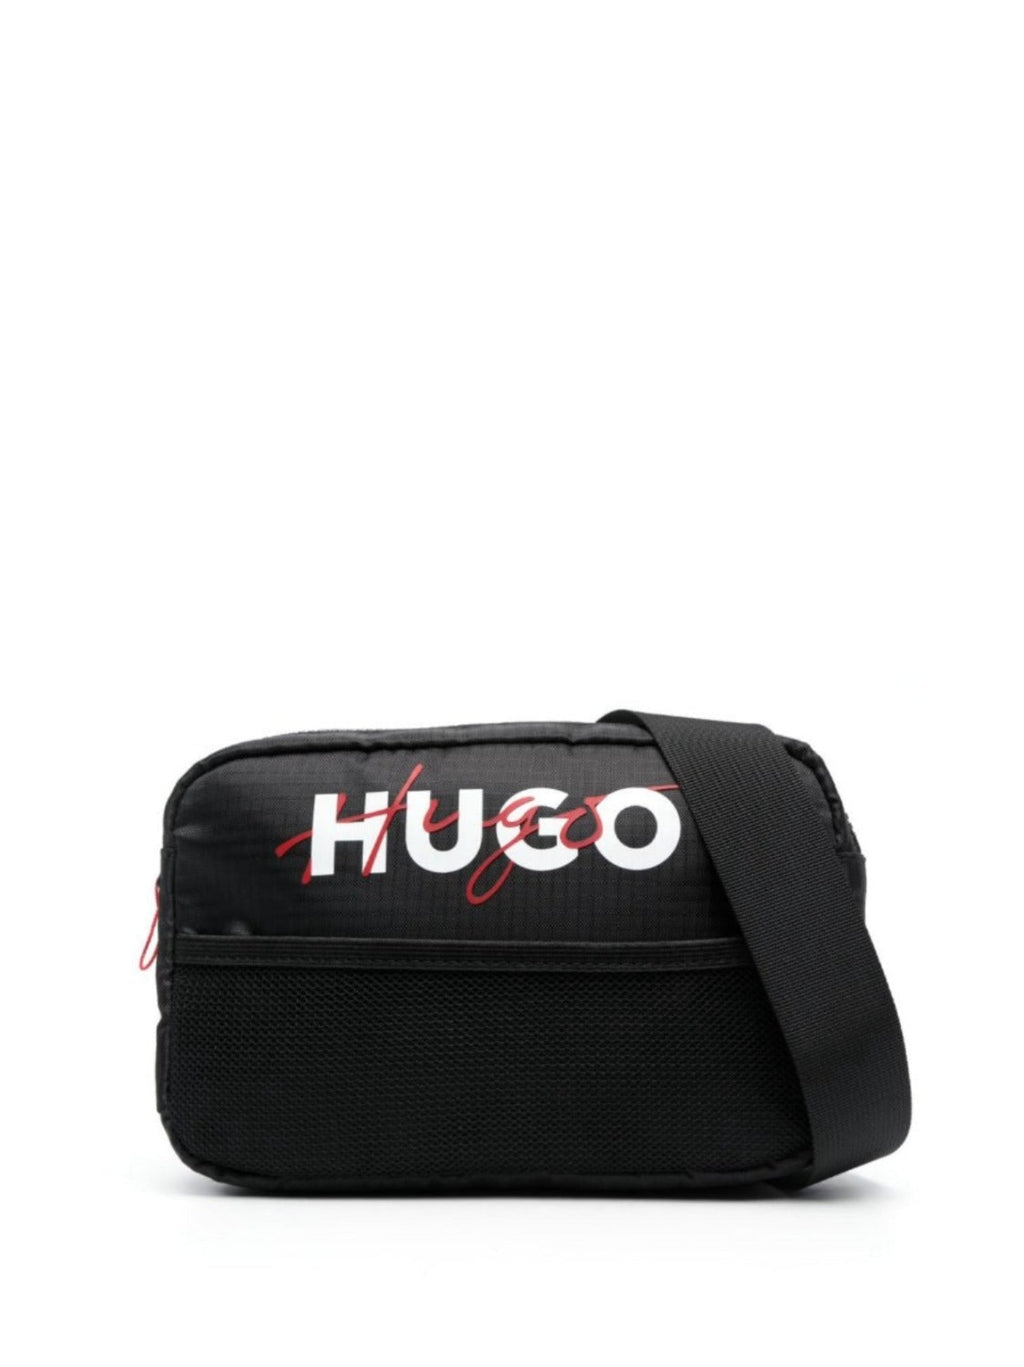 Hugo Bum Bag - Black